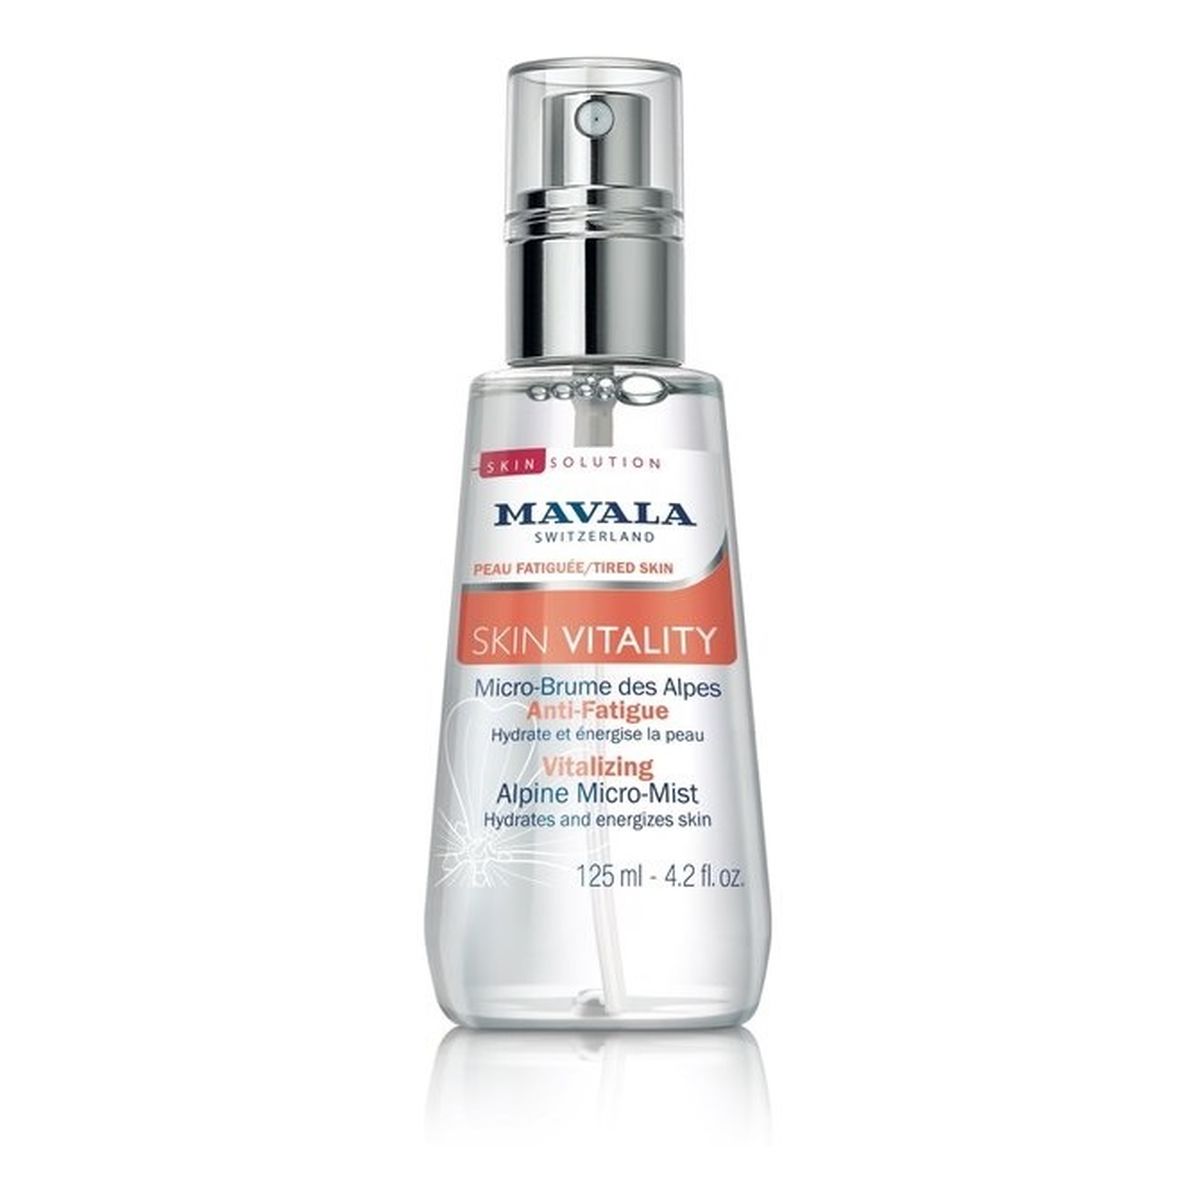 Mavala Skin Vitality Vitalizing Alpine Micro-Mist witalizująca Mgiełka do twarzy 125ml